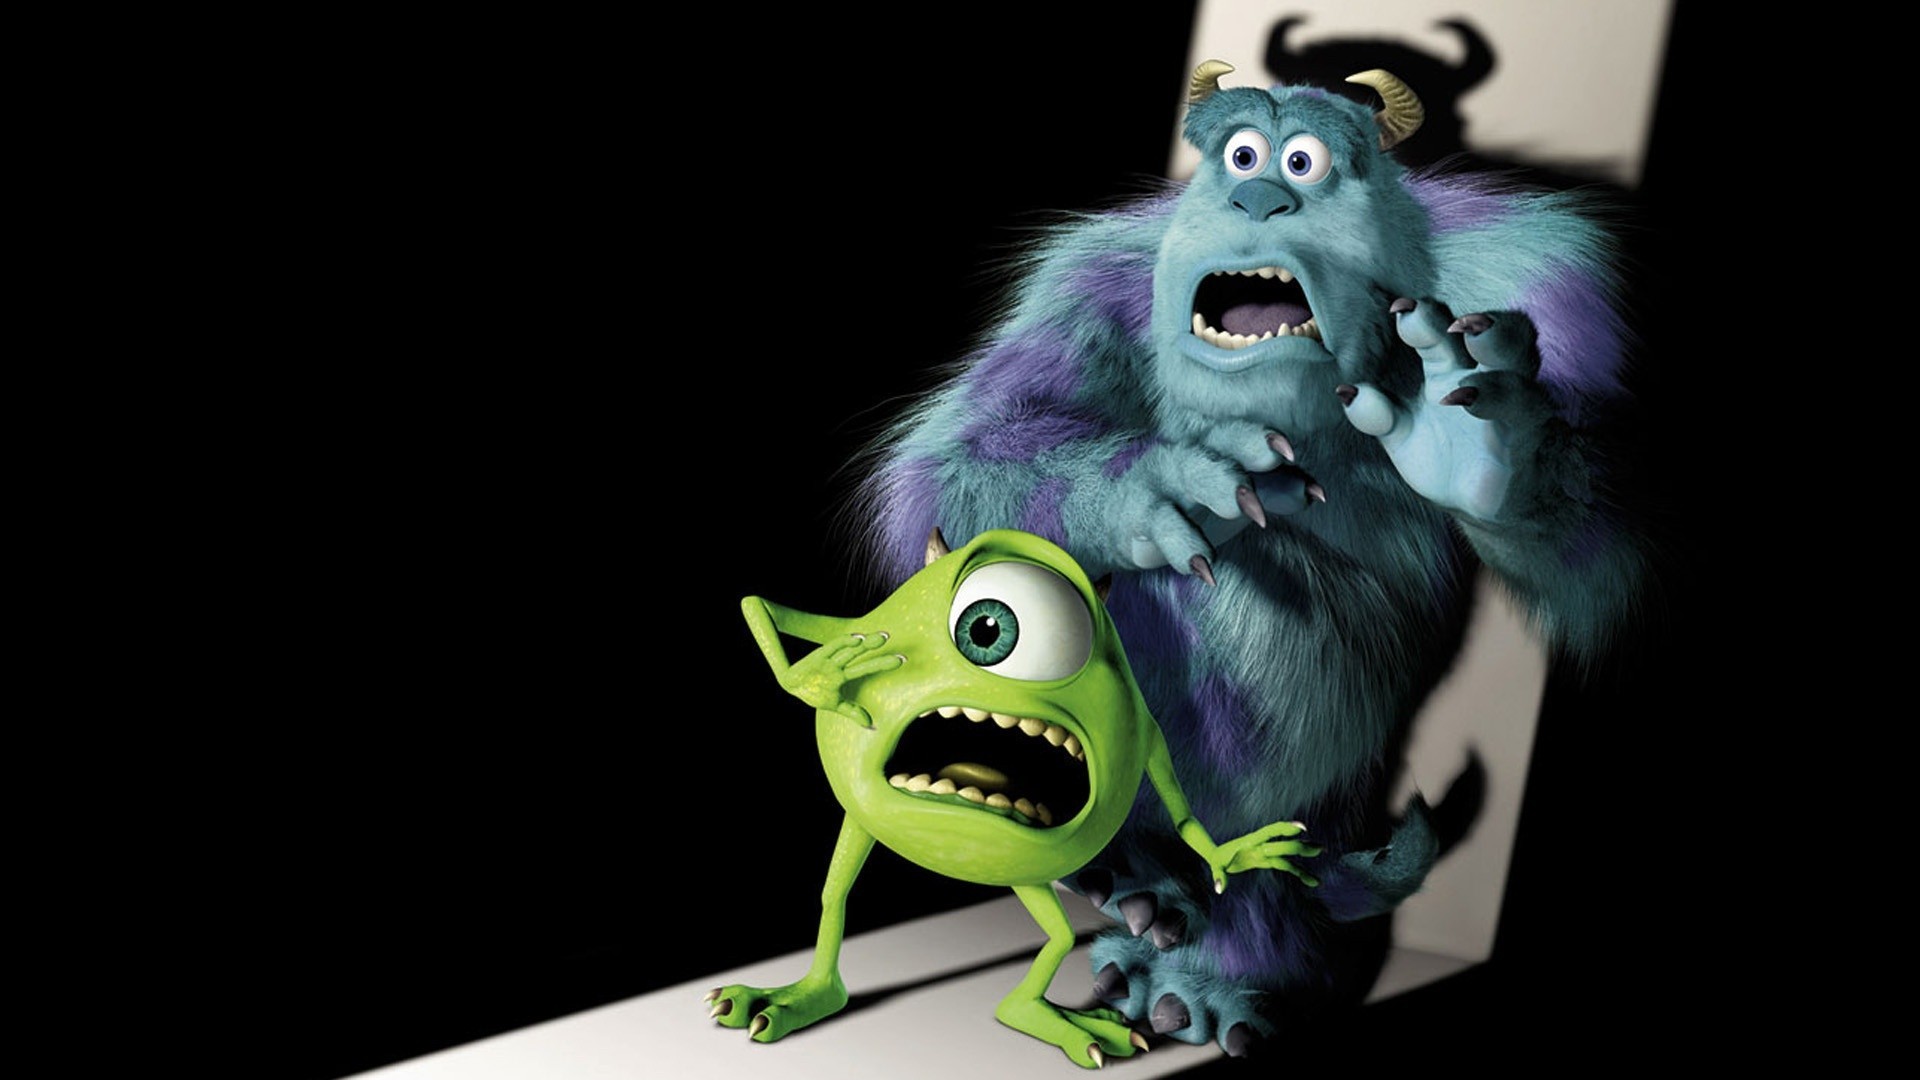 Monsters Inc Movies Animated Movies Pixar Animation Studios 1920x1080